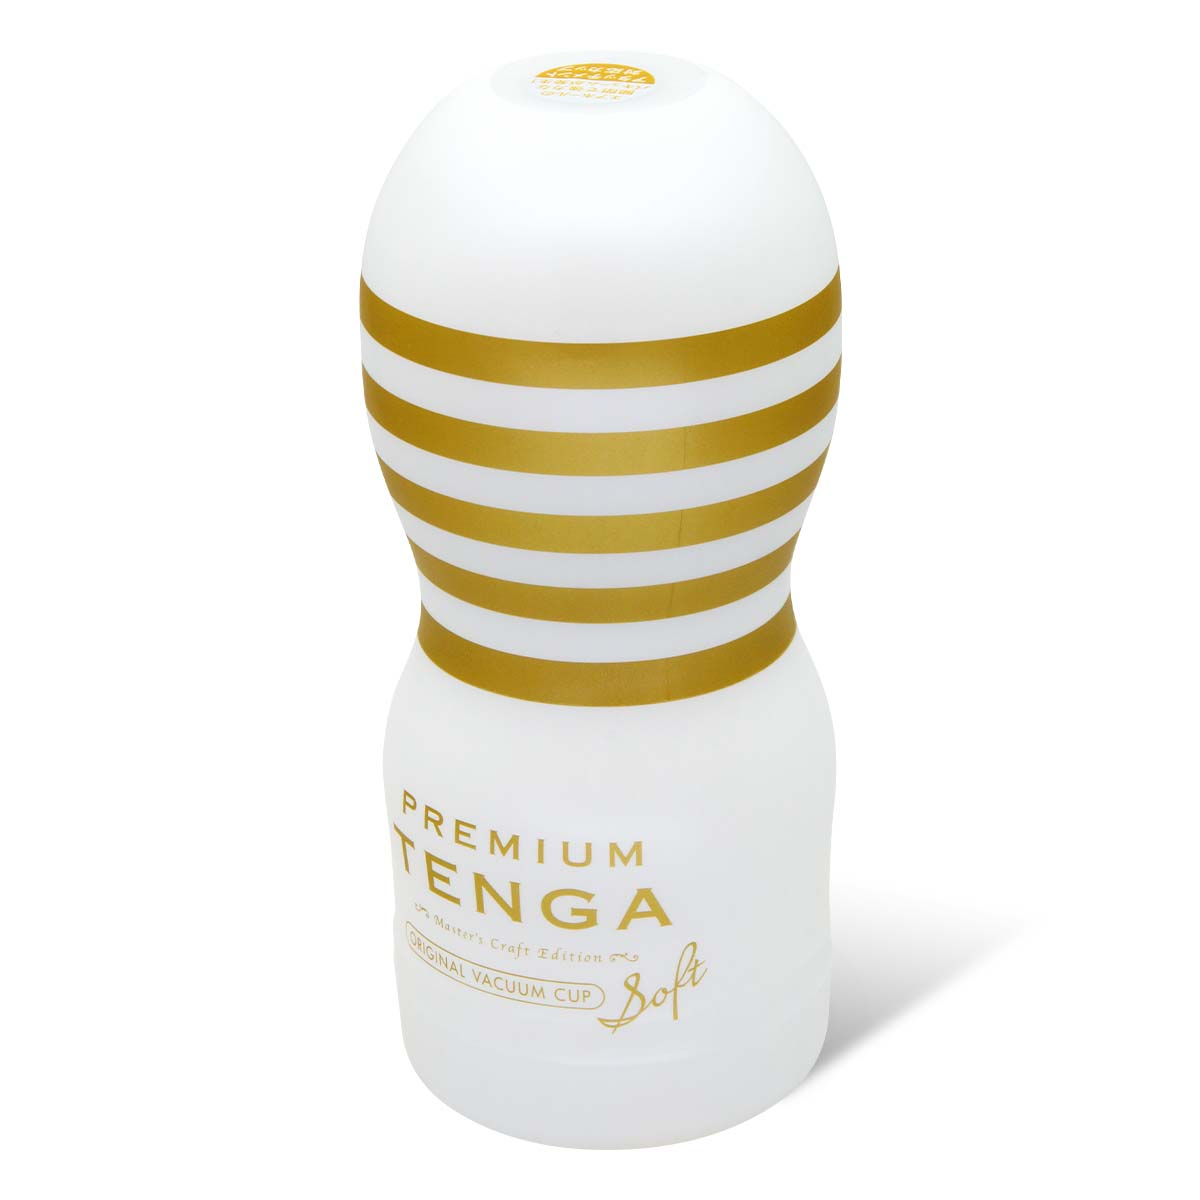 PREMIUM TENGA ORIGINAL VACUUM CUP 2nd Generation Soft-p_1